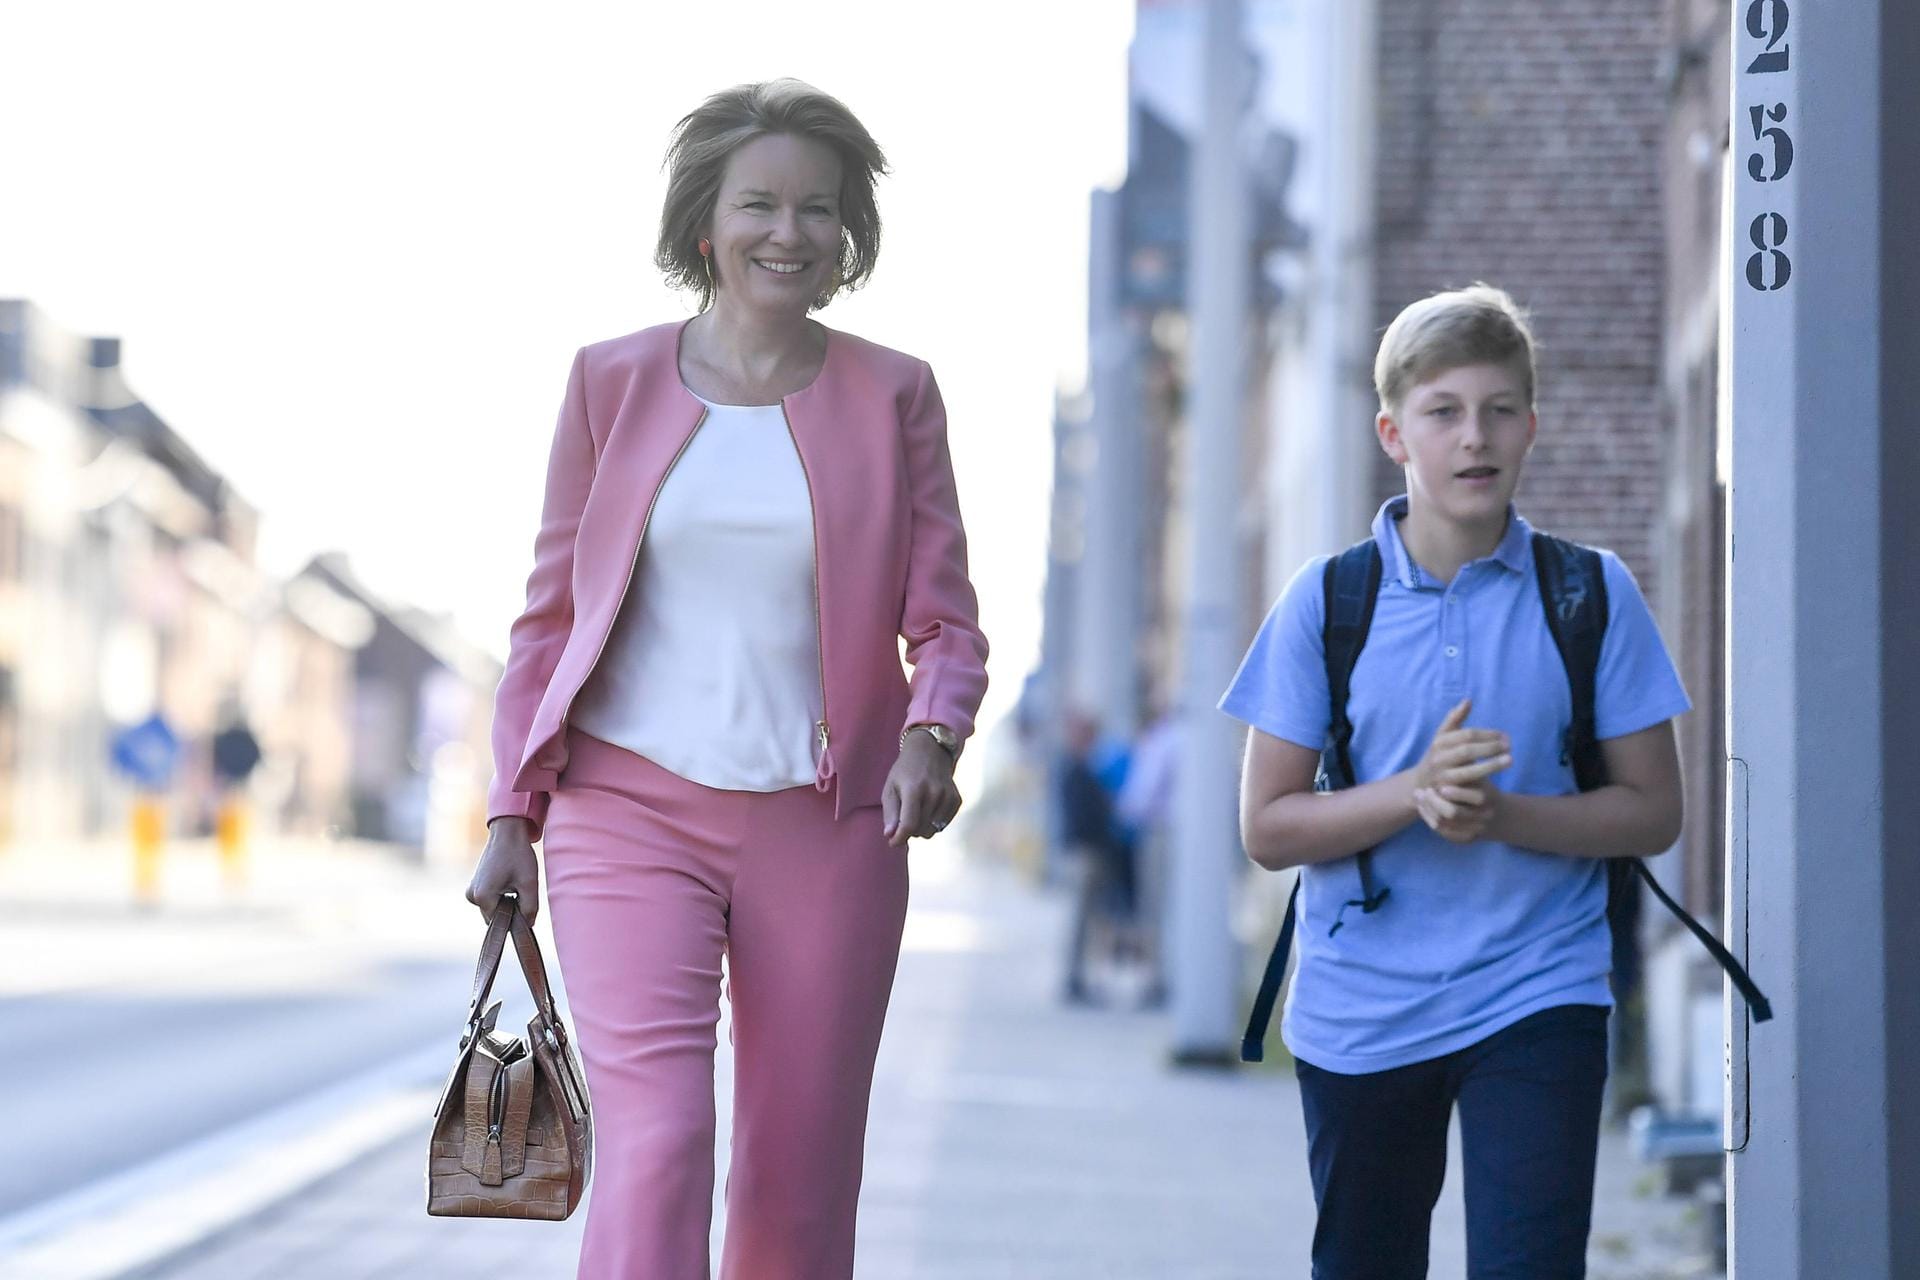 Königin Mathilde und Prinz Emmanuel auf dem Weg zur Schule.